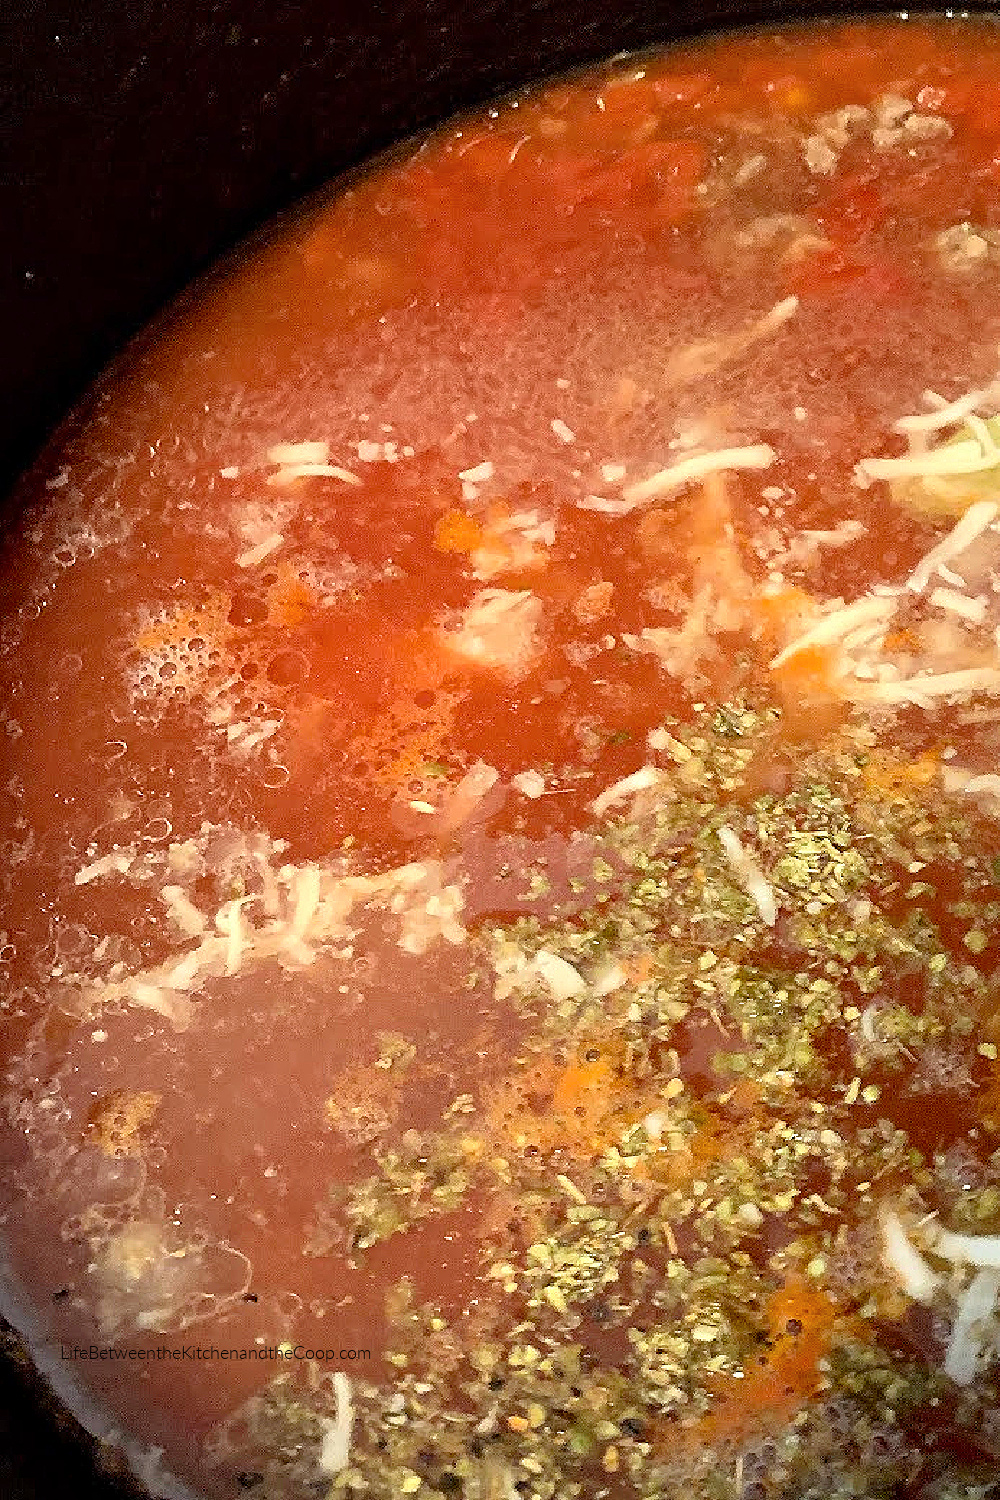 lasagna soup recipe